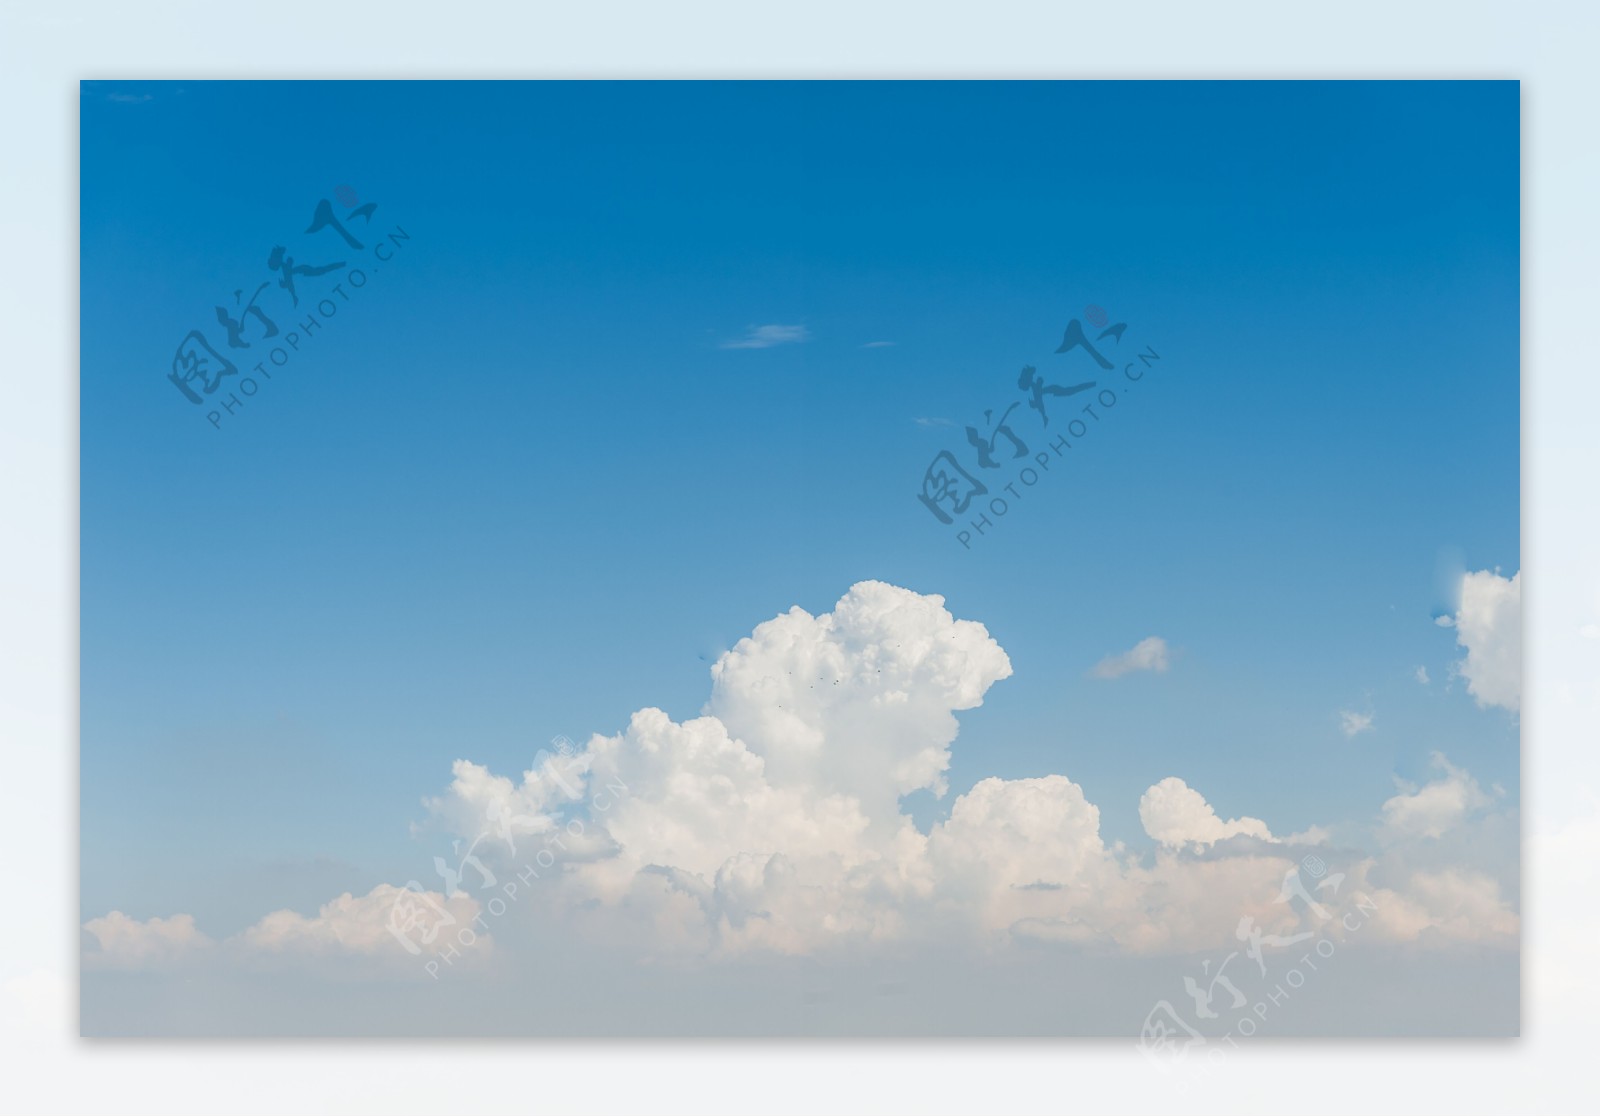 蓝天白云摄影图片